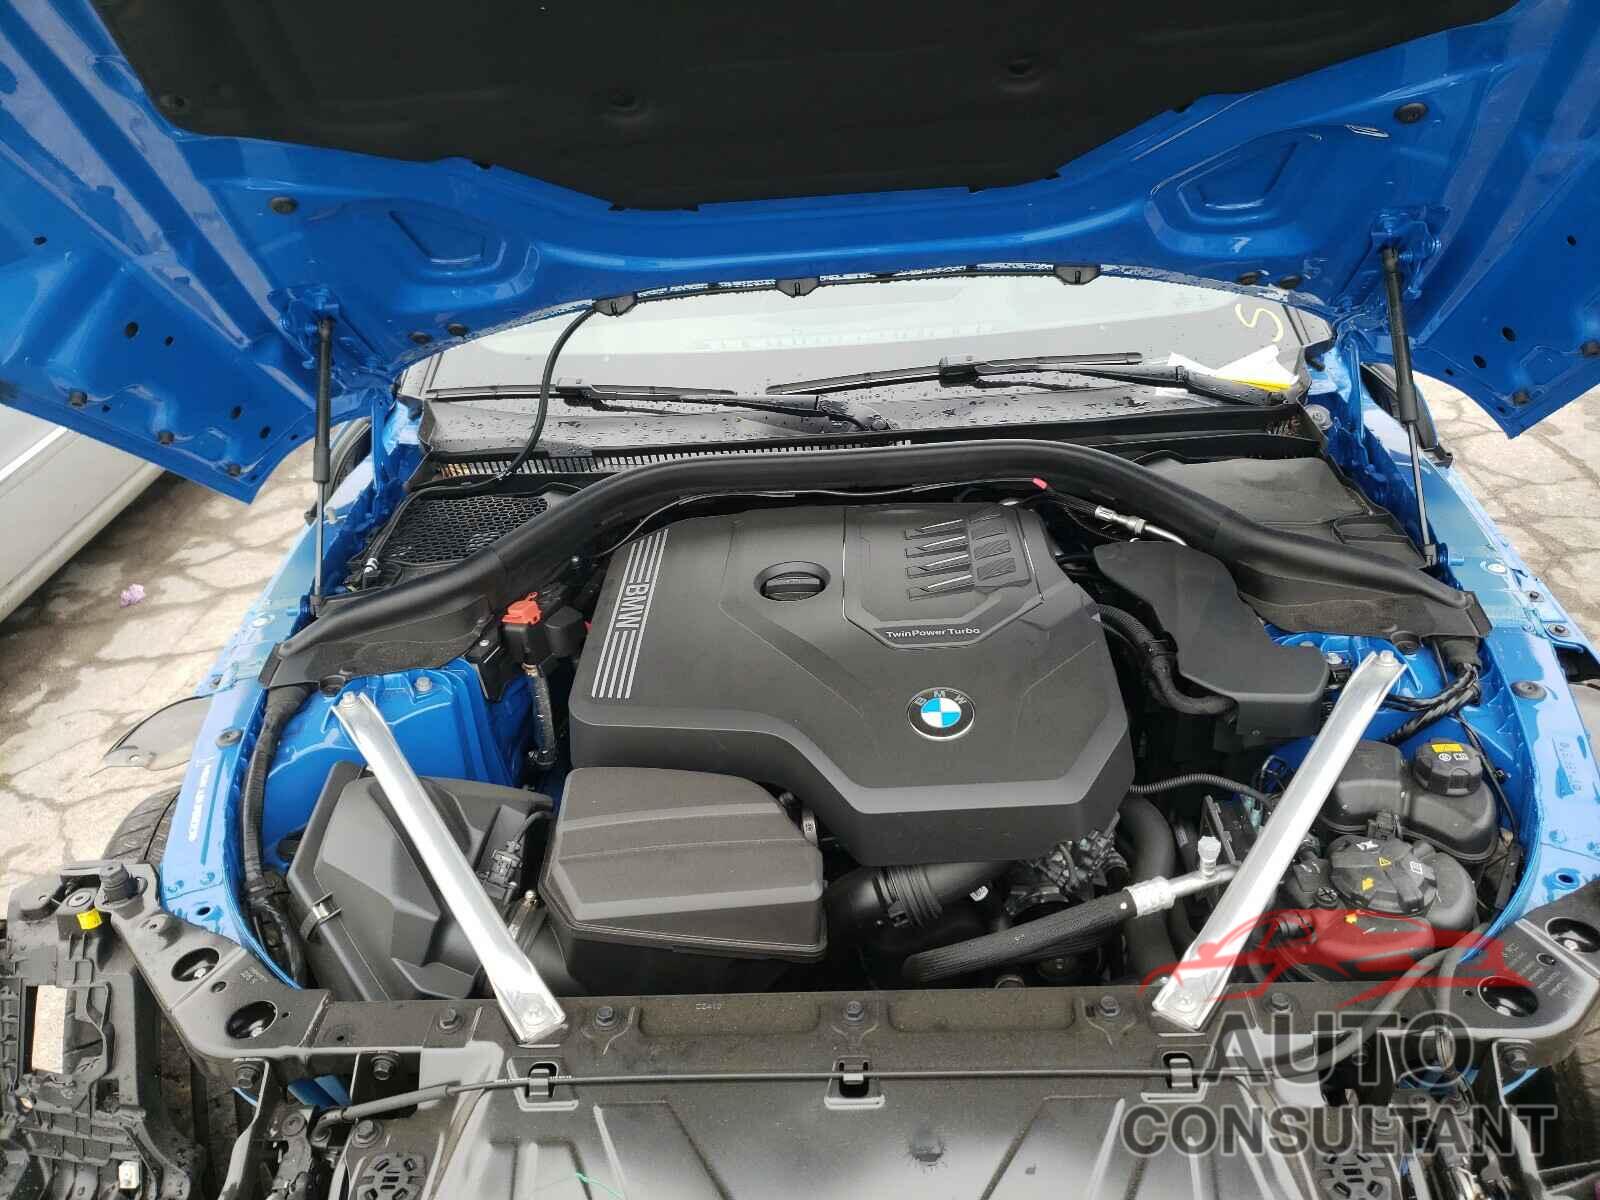 BMW Z4 2020 - WBAHF3C05LWW60323